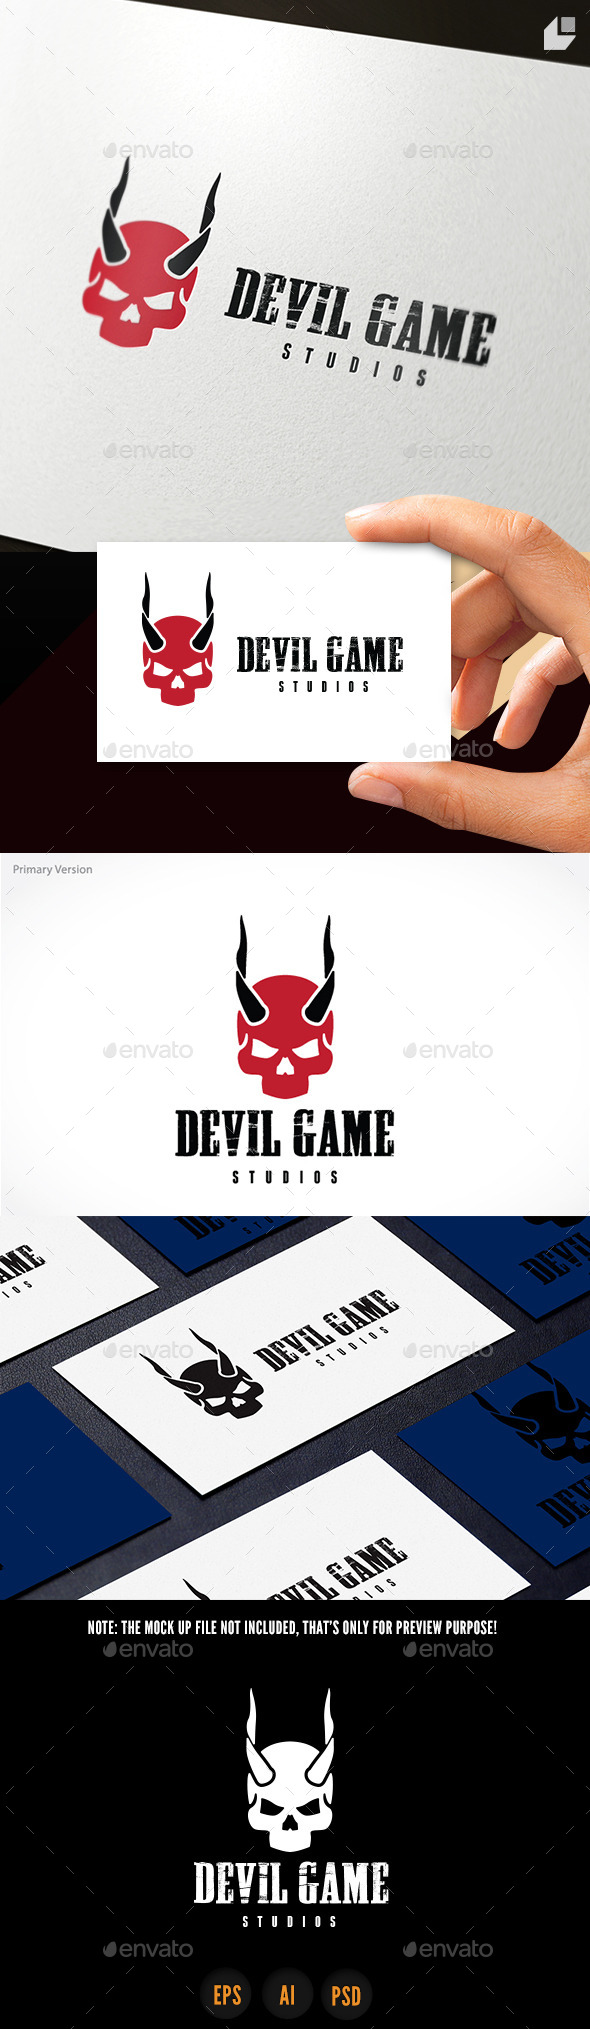 Devil Game